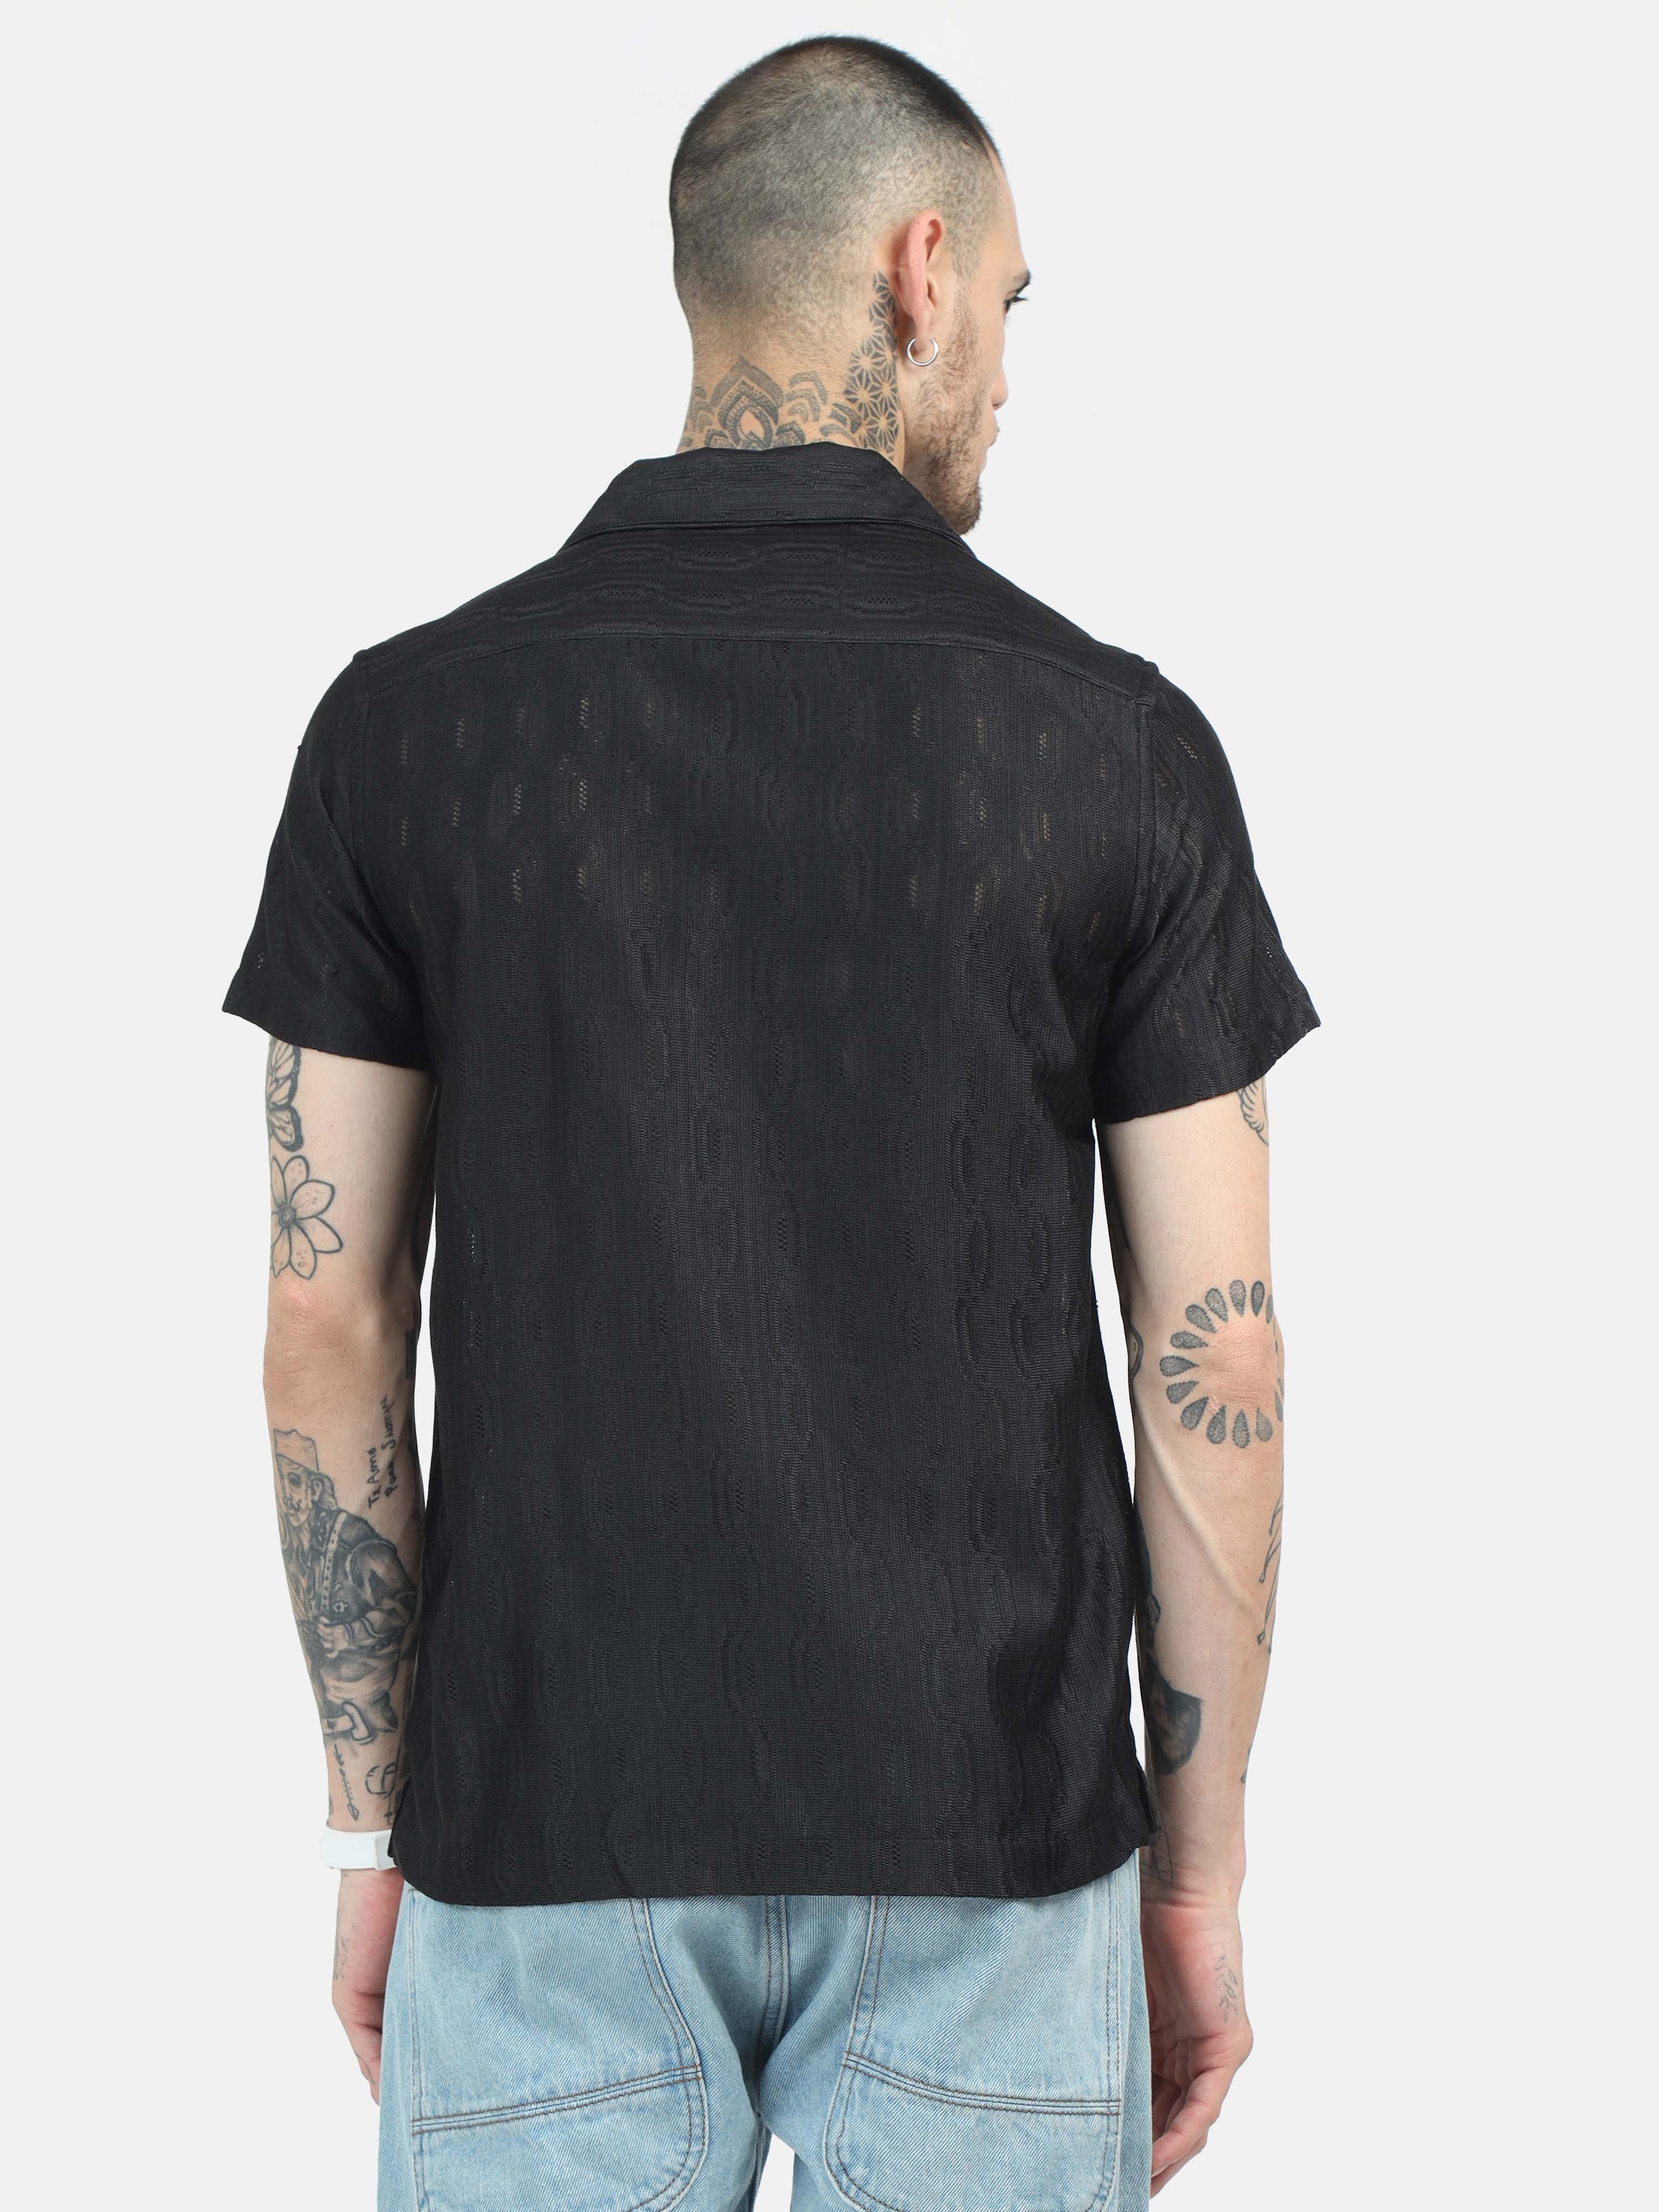 Meld Crochet Black Shirt